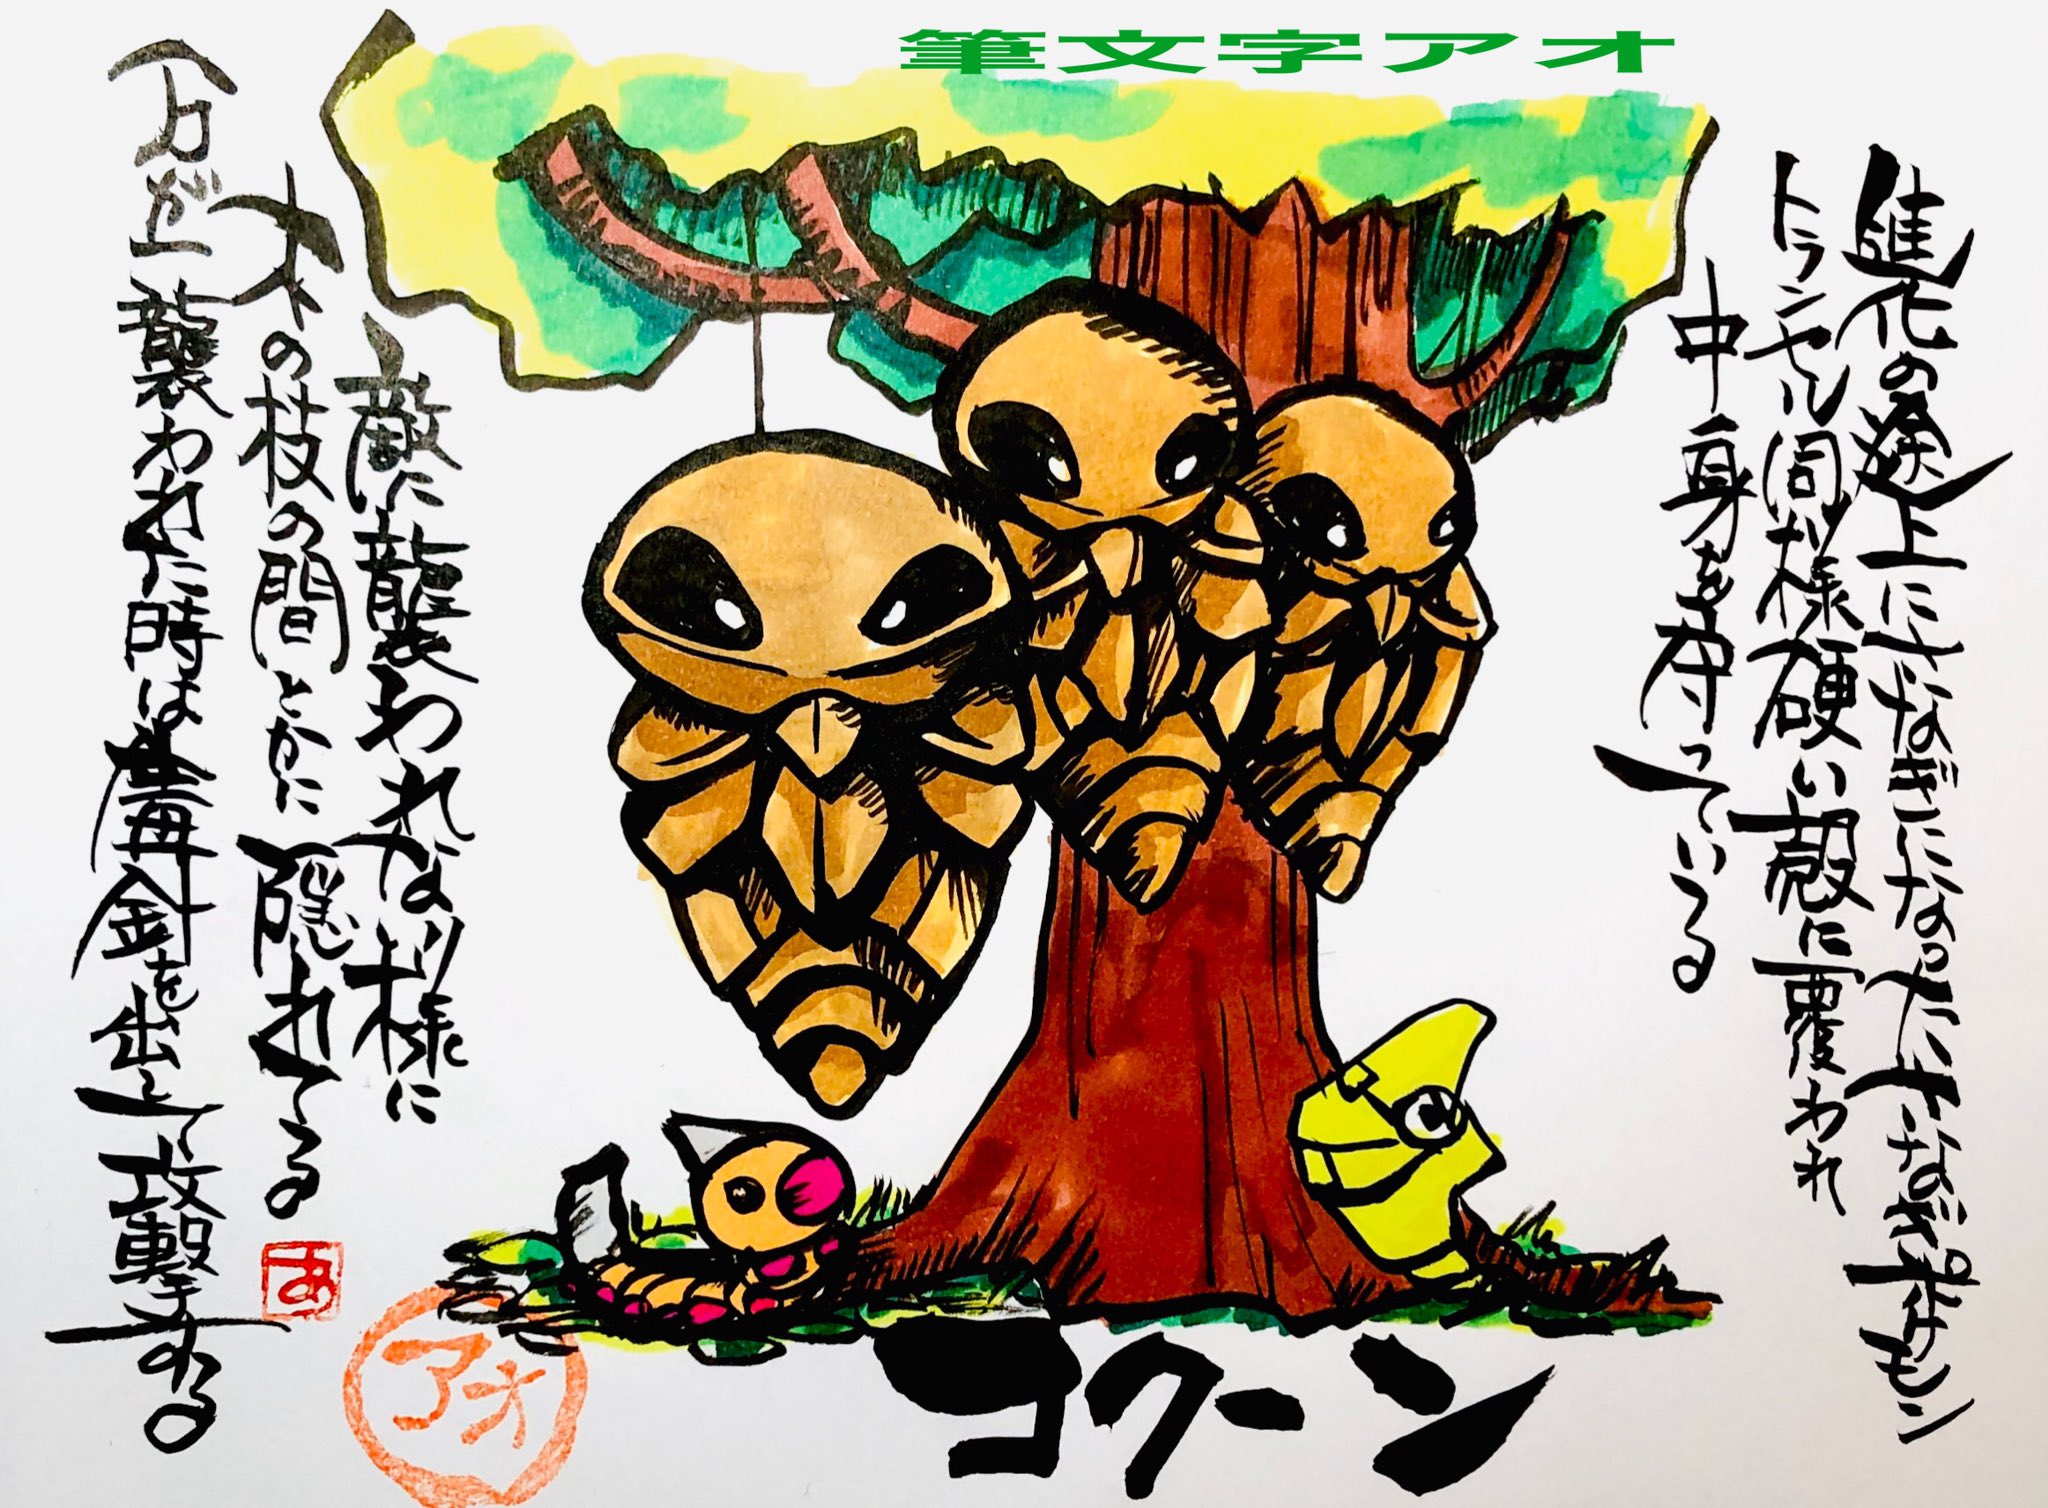 Aki Shimamoto ポケモン絵師休憩中エネルギーアートクリエーター 筆ペンでポケモンを描く コクーン 進化の途上にさなぎになったさなぎポケモン トランセル同様硬い殻に覆われ中身を守っている 敵に襲われない様に木の枝の間とかに隠れてる 万が一襲われた